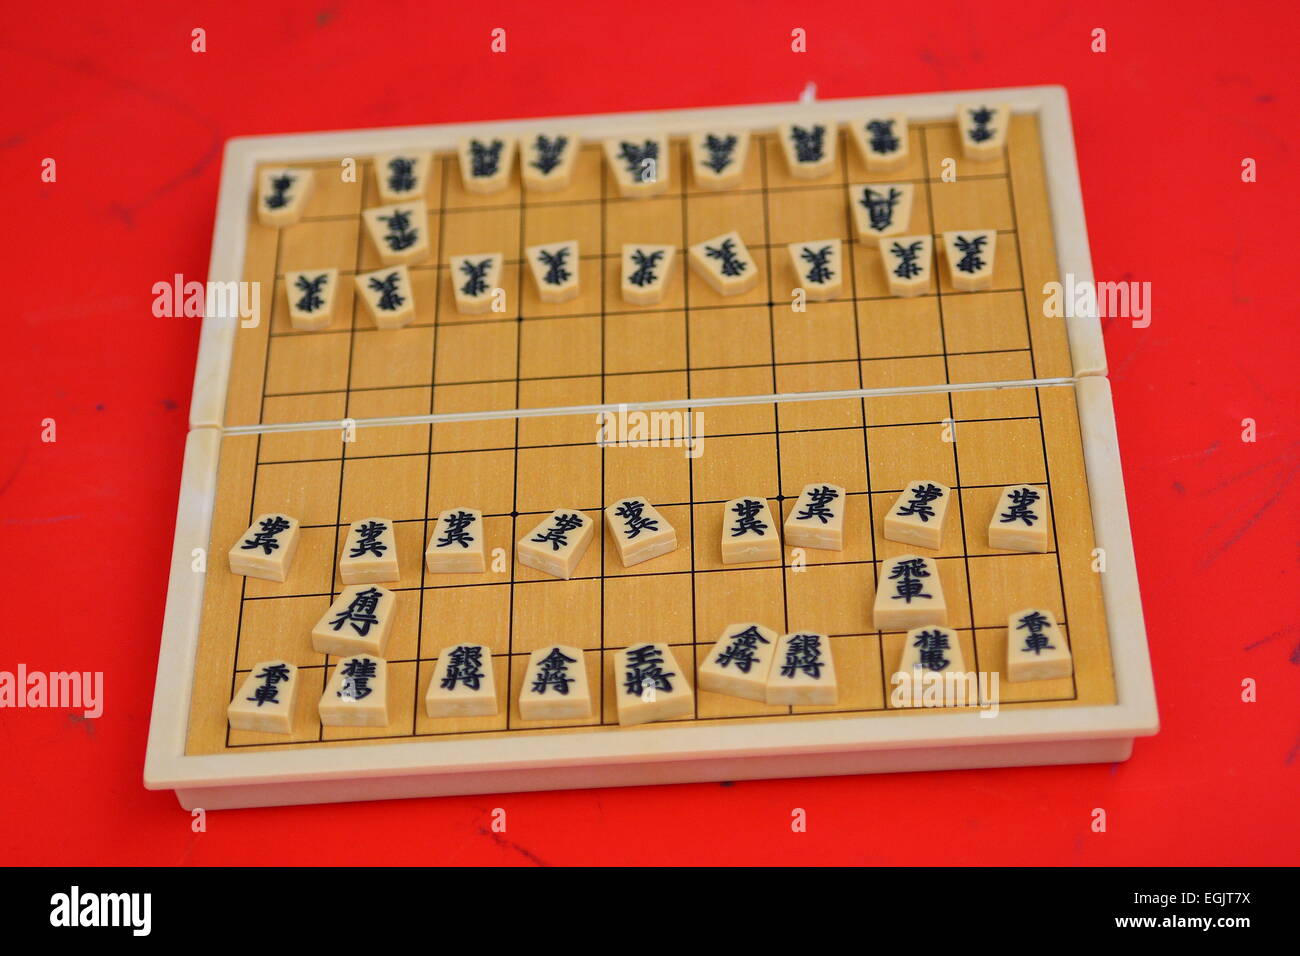 Jogo De Xadrez Japonês (Shogi) Imagem de Stock - Imagem de torre,  tradicional: 13482577